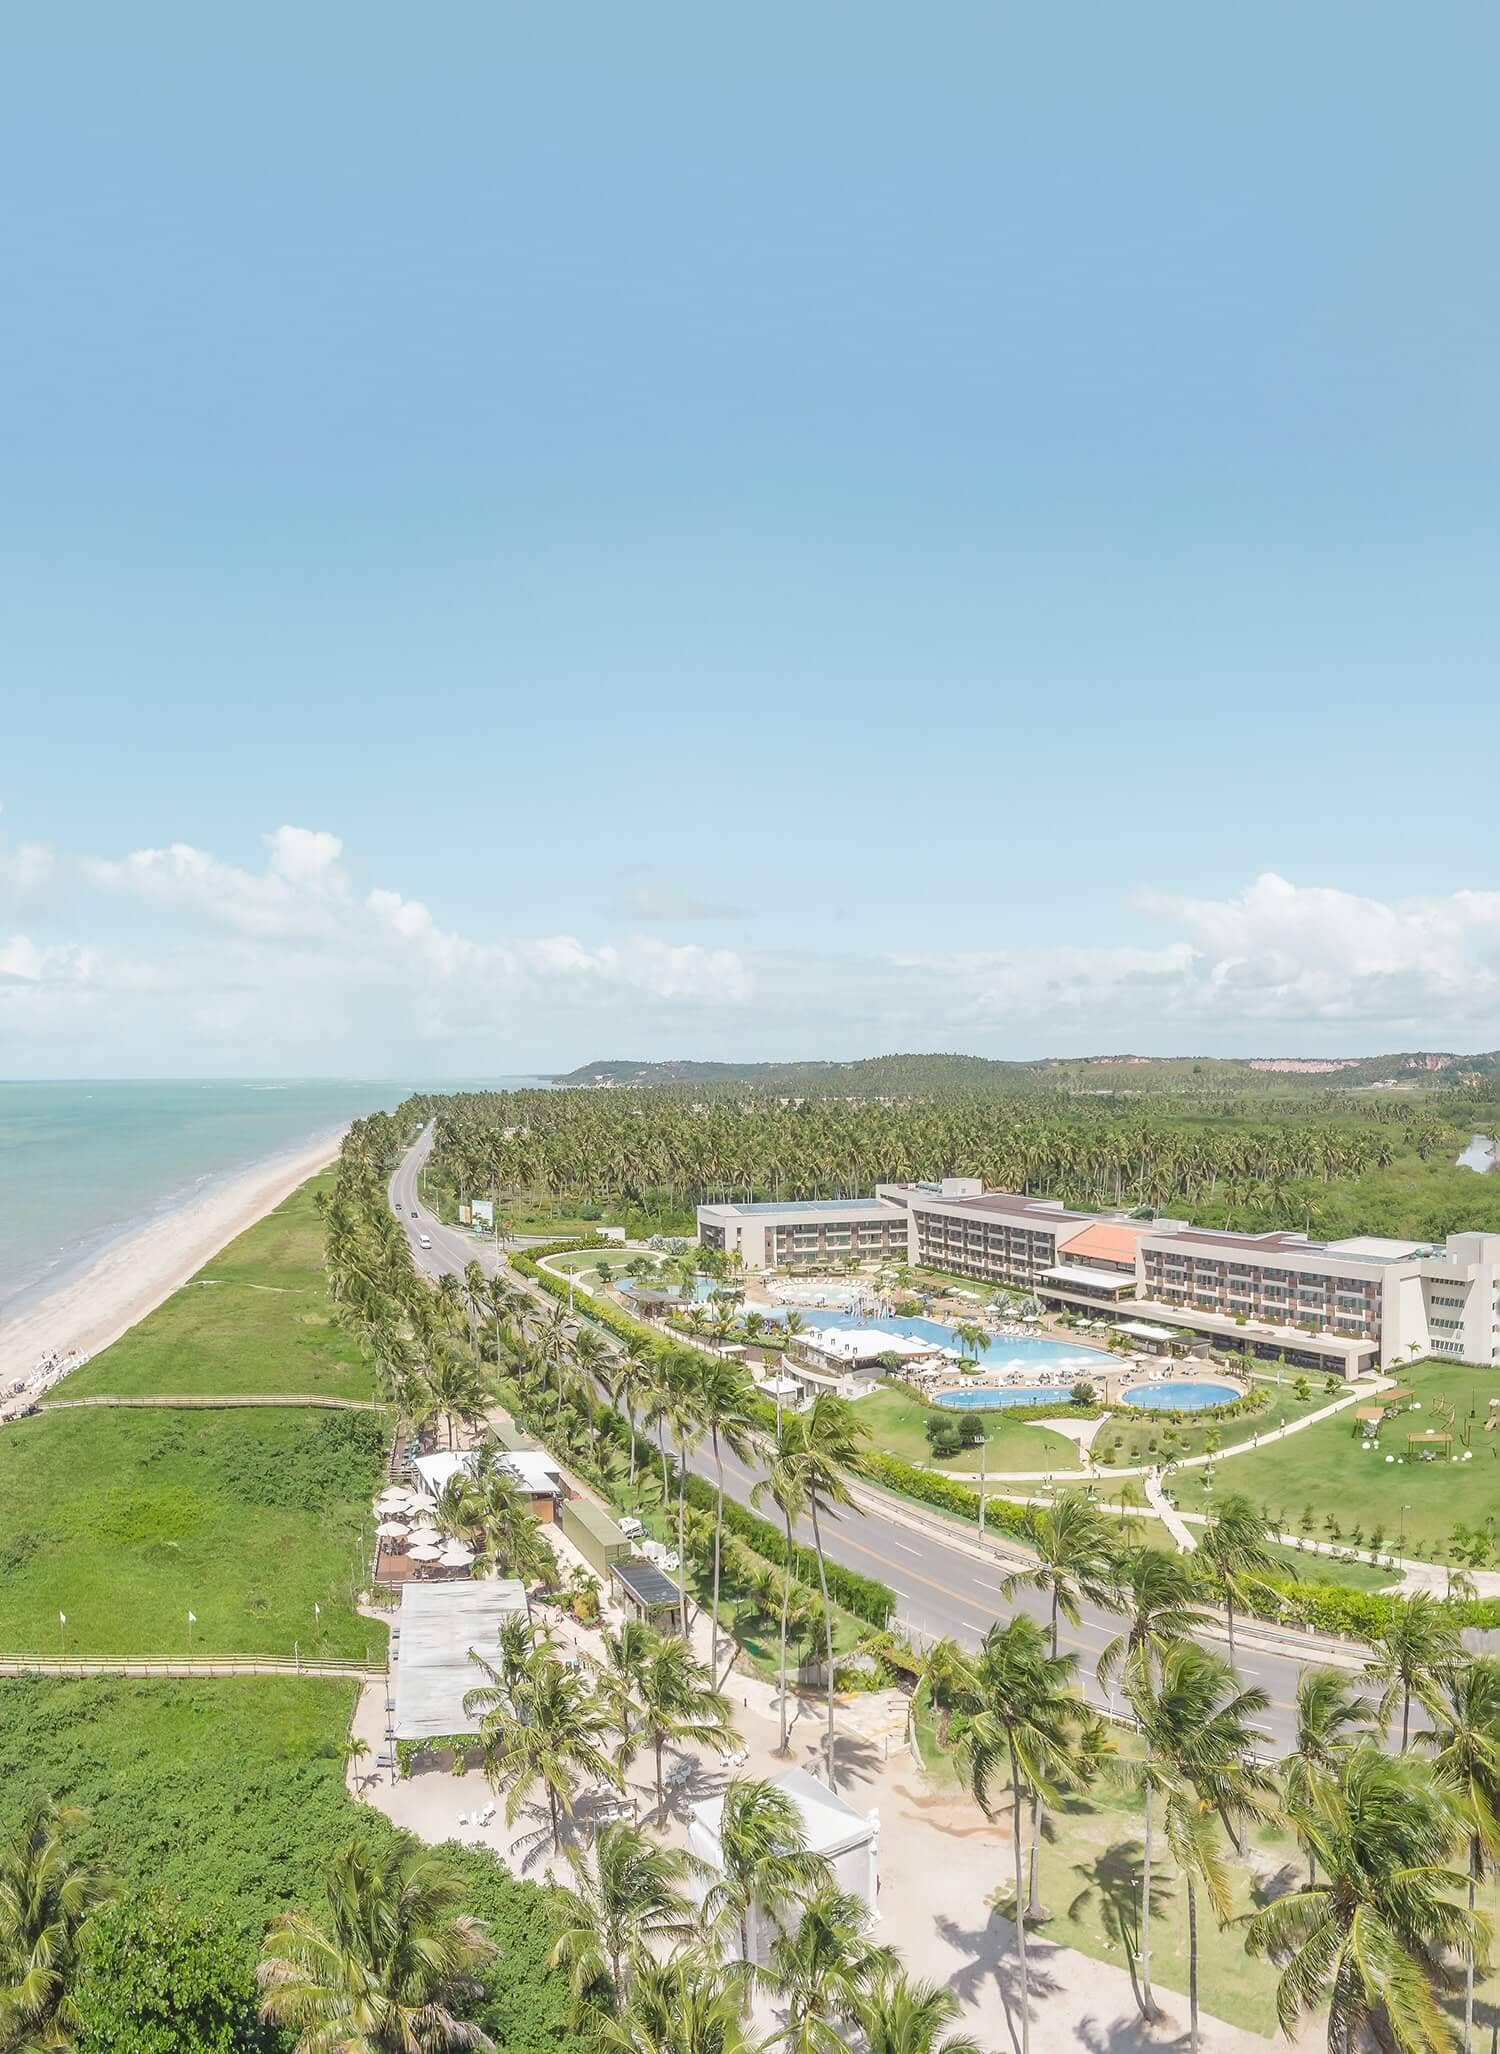 Parte da estrutura do Japaratinga Lounge Resort e da praia de Japaratinga, em Alagoas. É possível ver parte do complexo de piscinas, alguns de seus prédios e restaurantes. Além disso, há uma vasta vegetação ao redor.